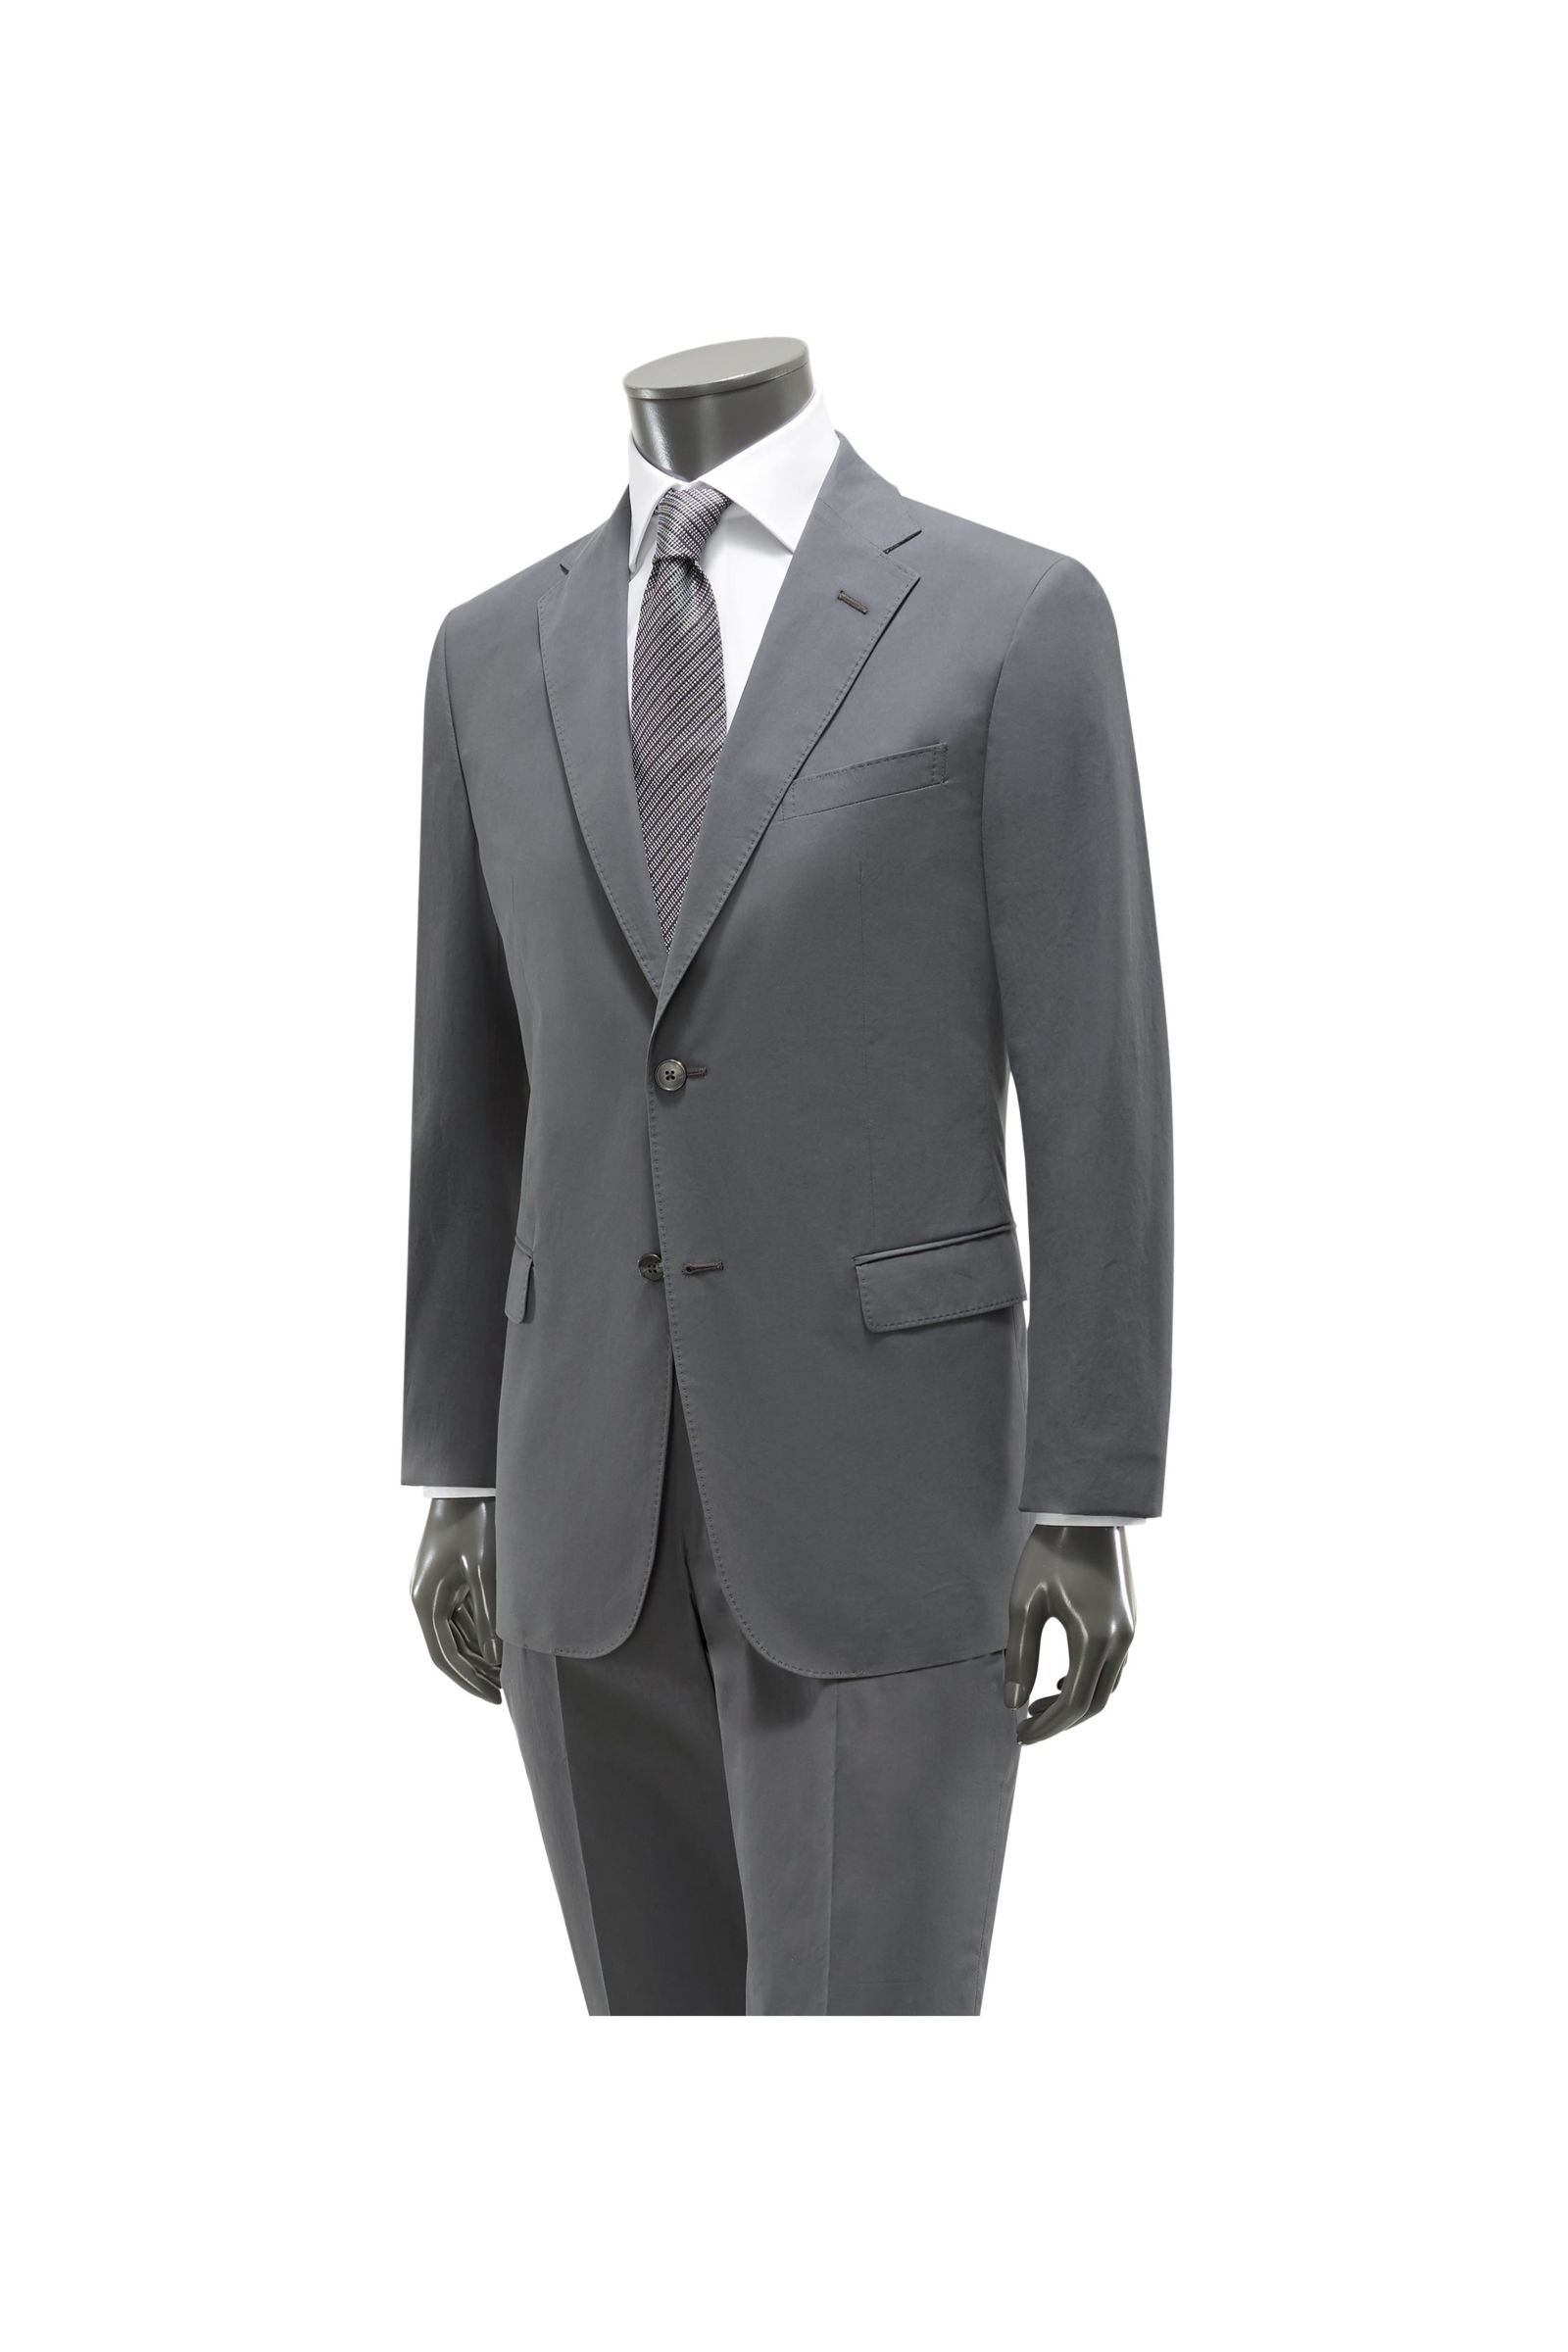 Cotton suit 'Solferino' dark grey